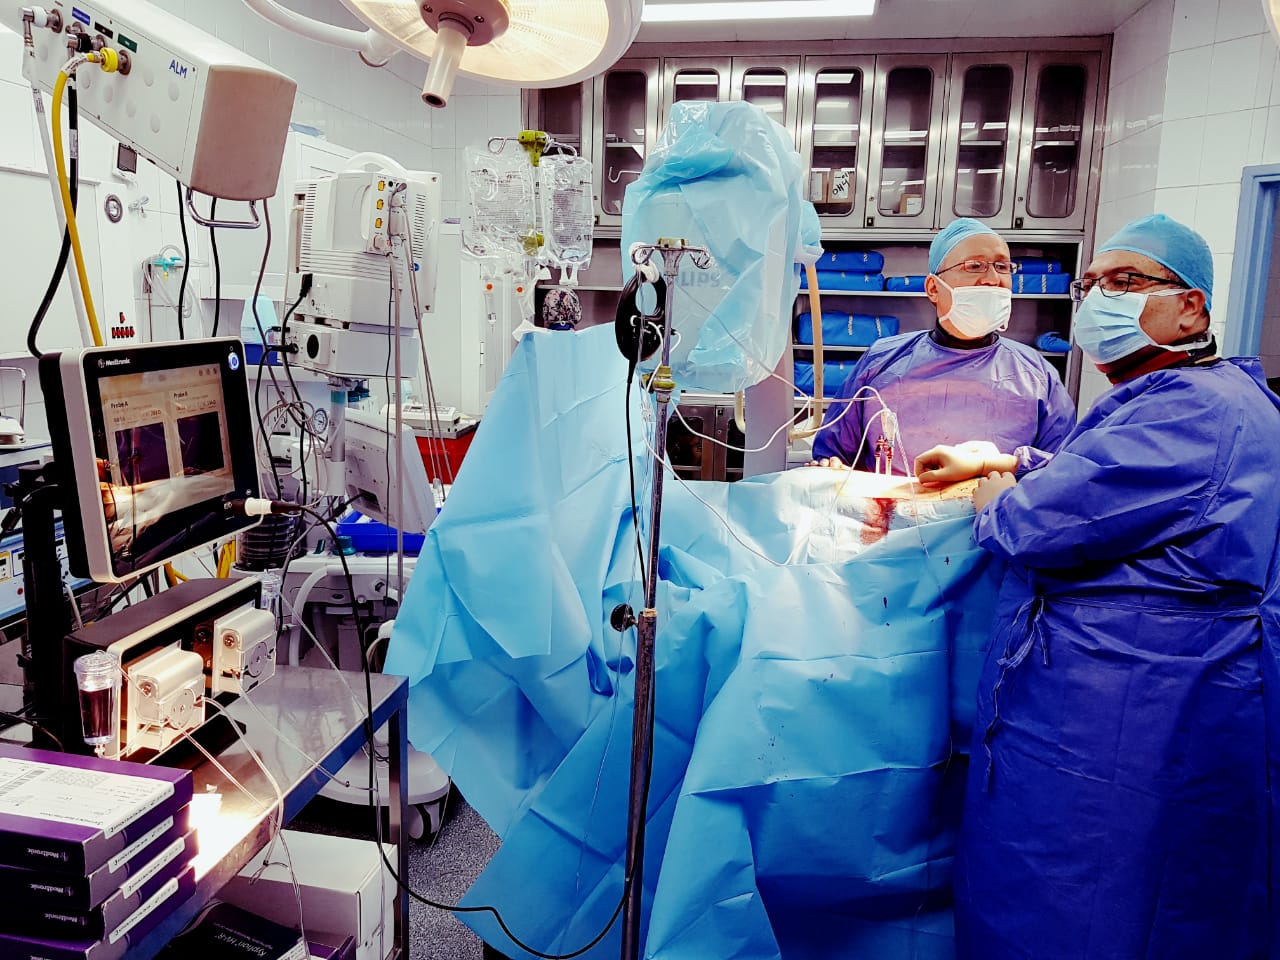 استخدام  تقنية حديثة و متطورة في علاج الأورام المنتشرة في العمود الفقري والعظم في مستشفى الجامعة الاردنية